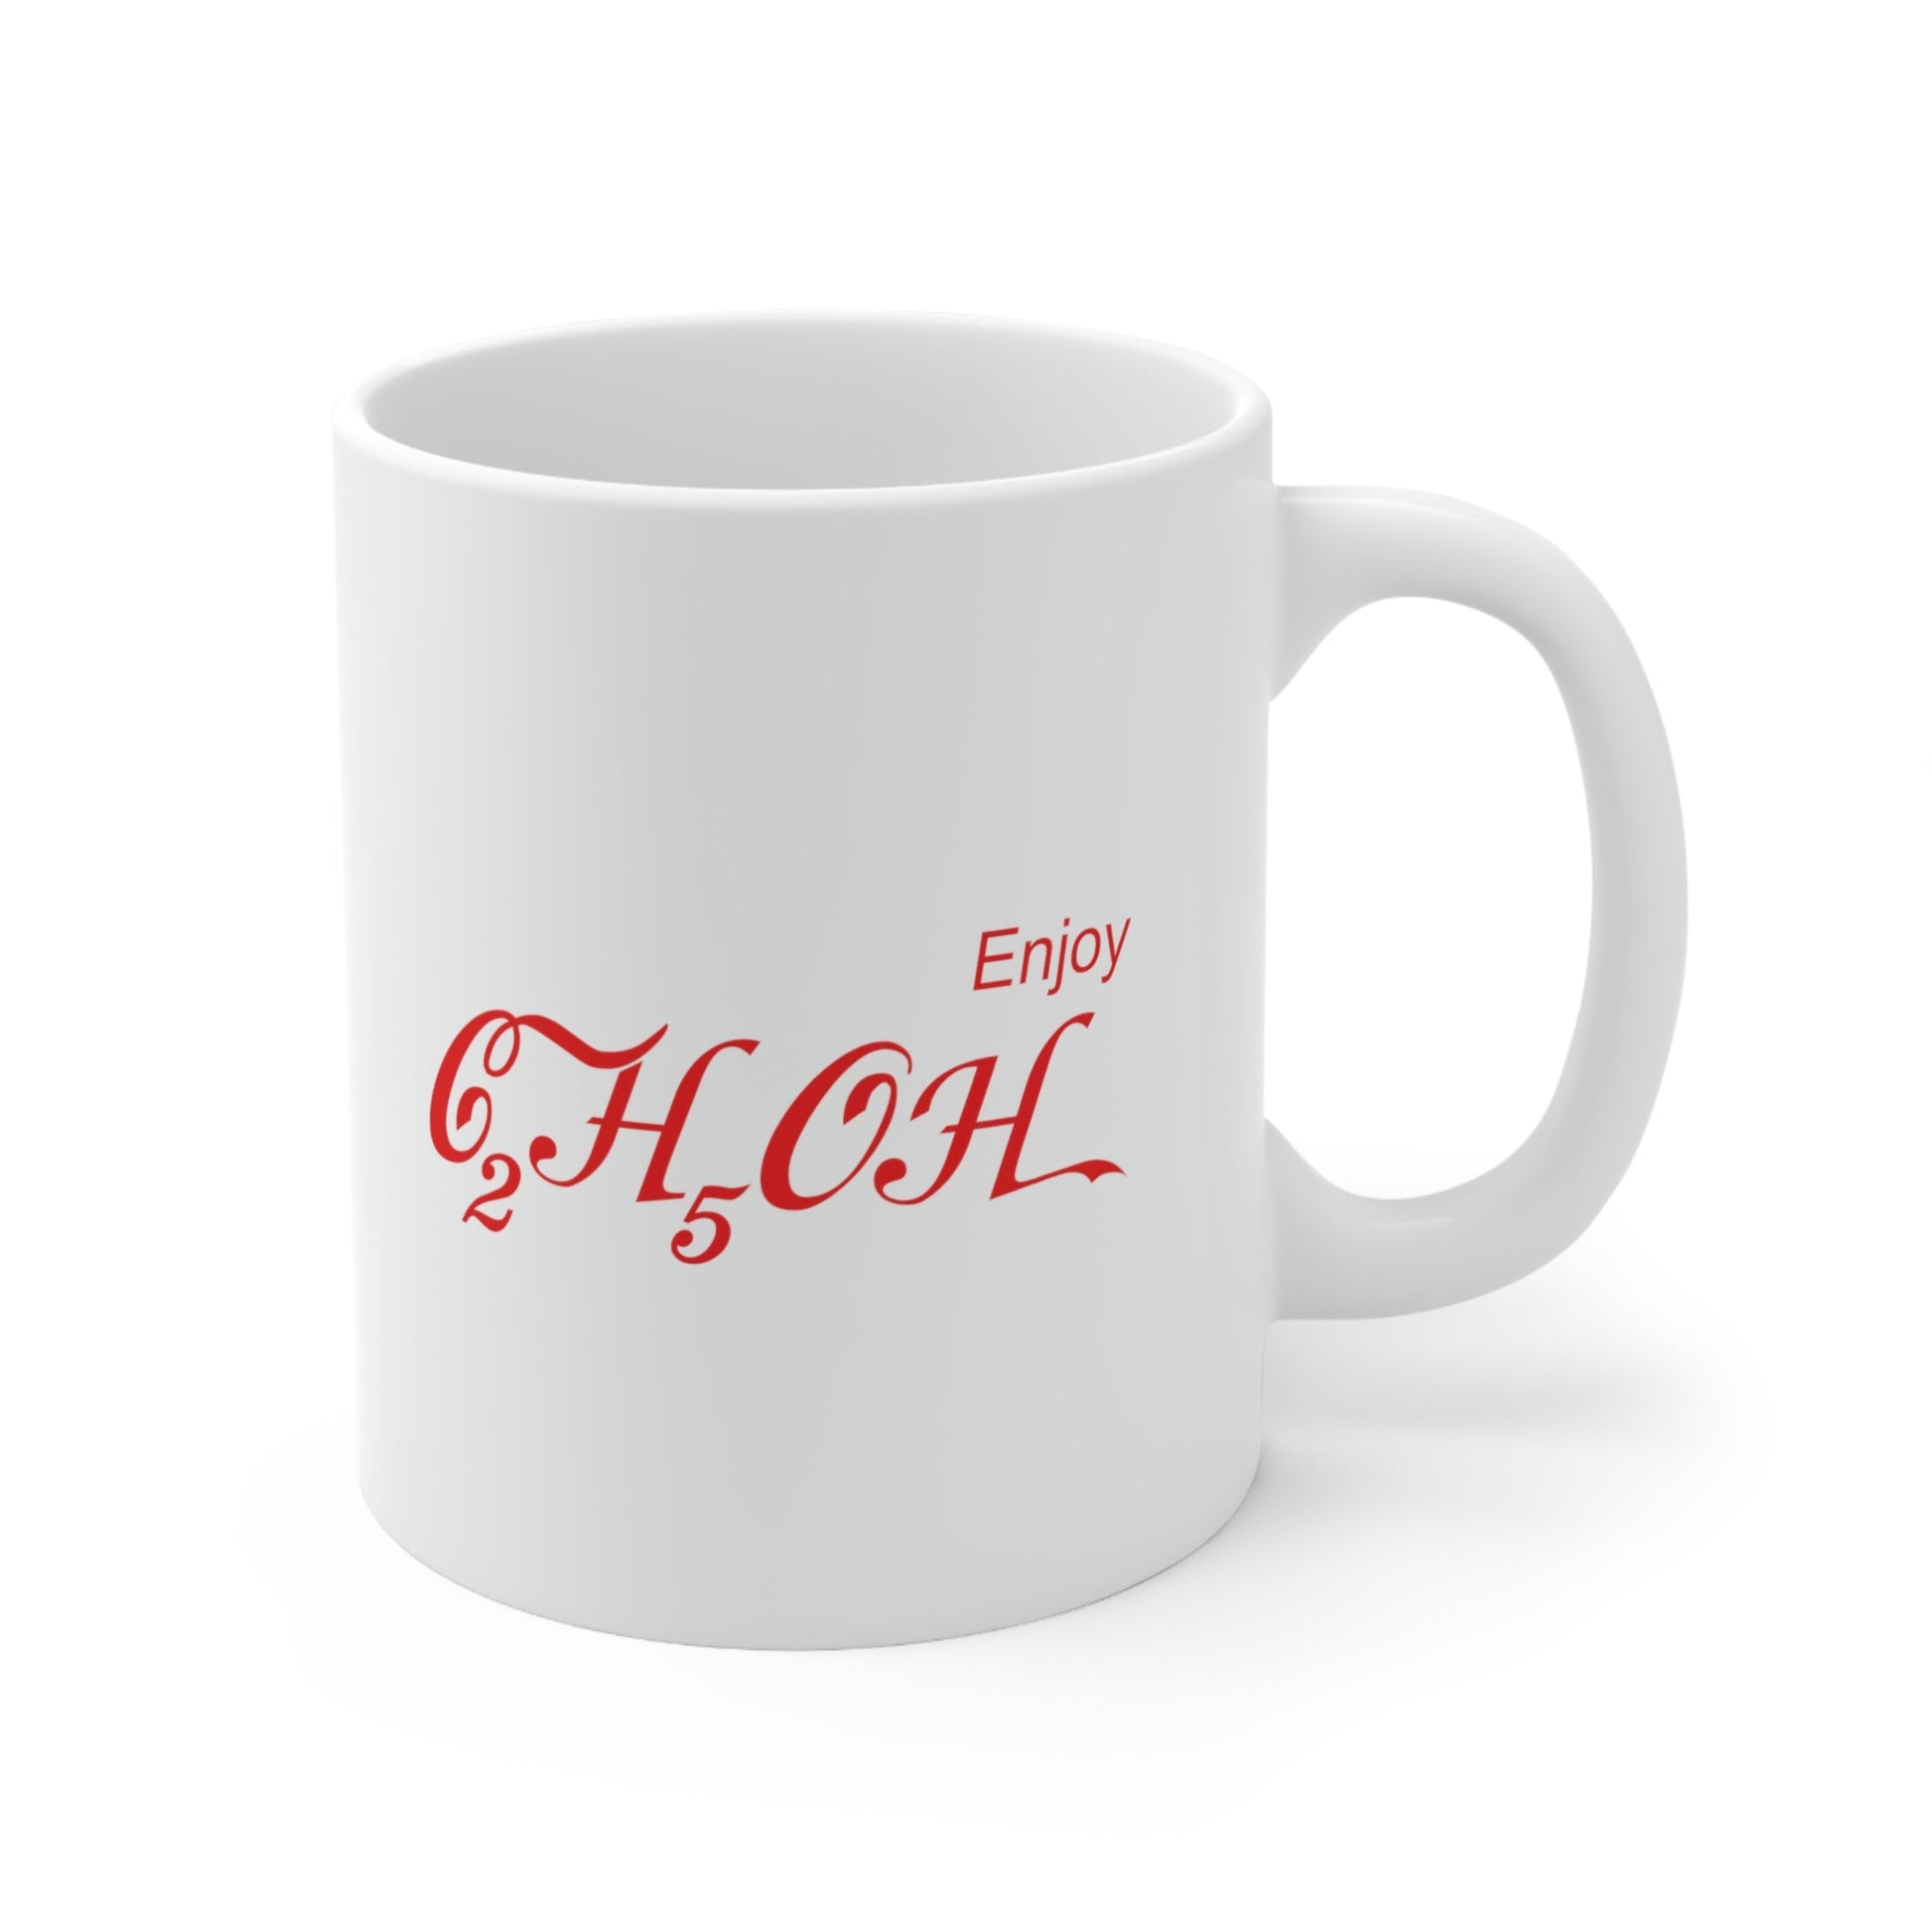 Enjoy C2H5OH Formula Ethanol Chemical Compound Ceramic Mug 11oz Ichaku [Perfect Gifts Selection]